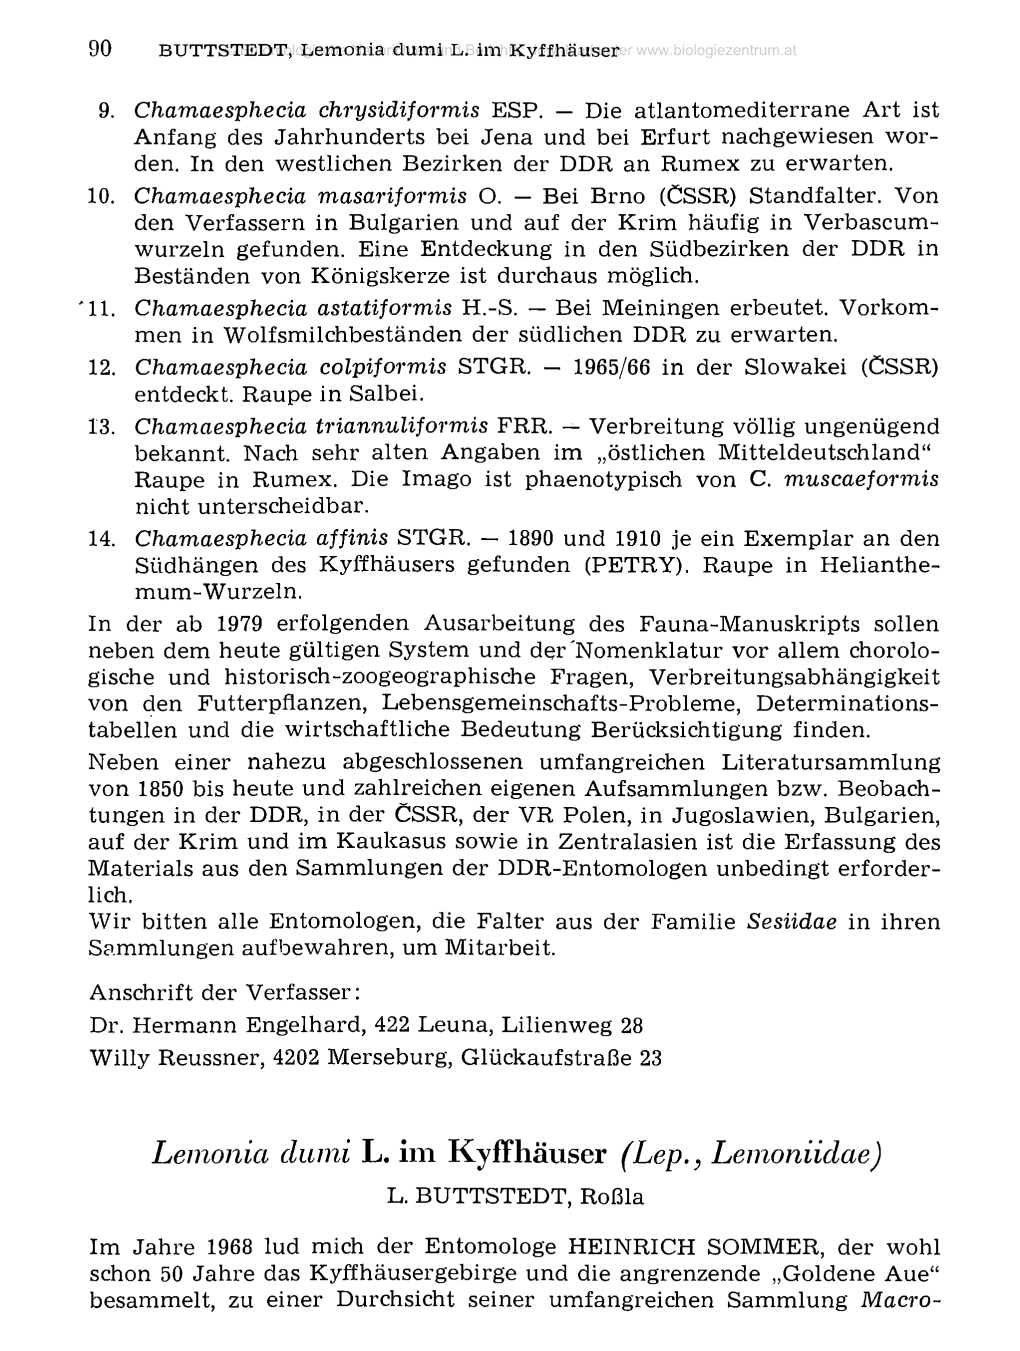 Lemonici Dumi L. Im Kyffhäuser (Lep., Lemoniidae)